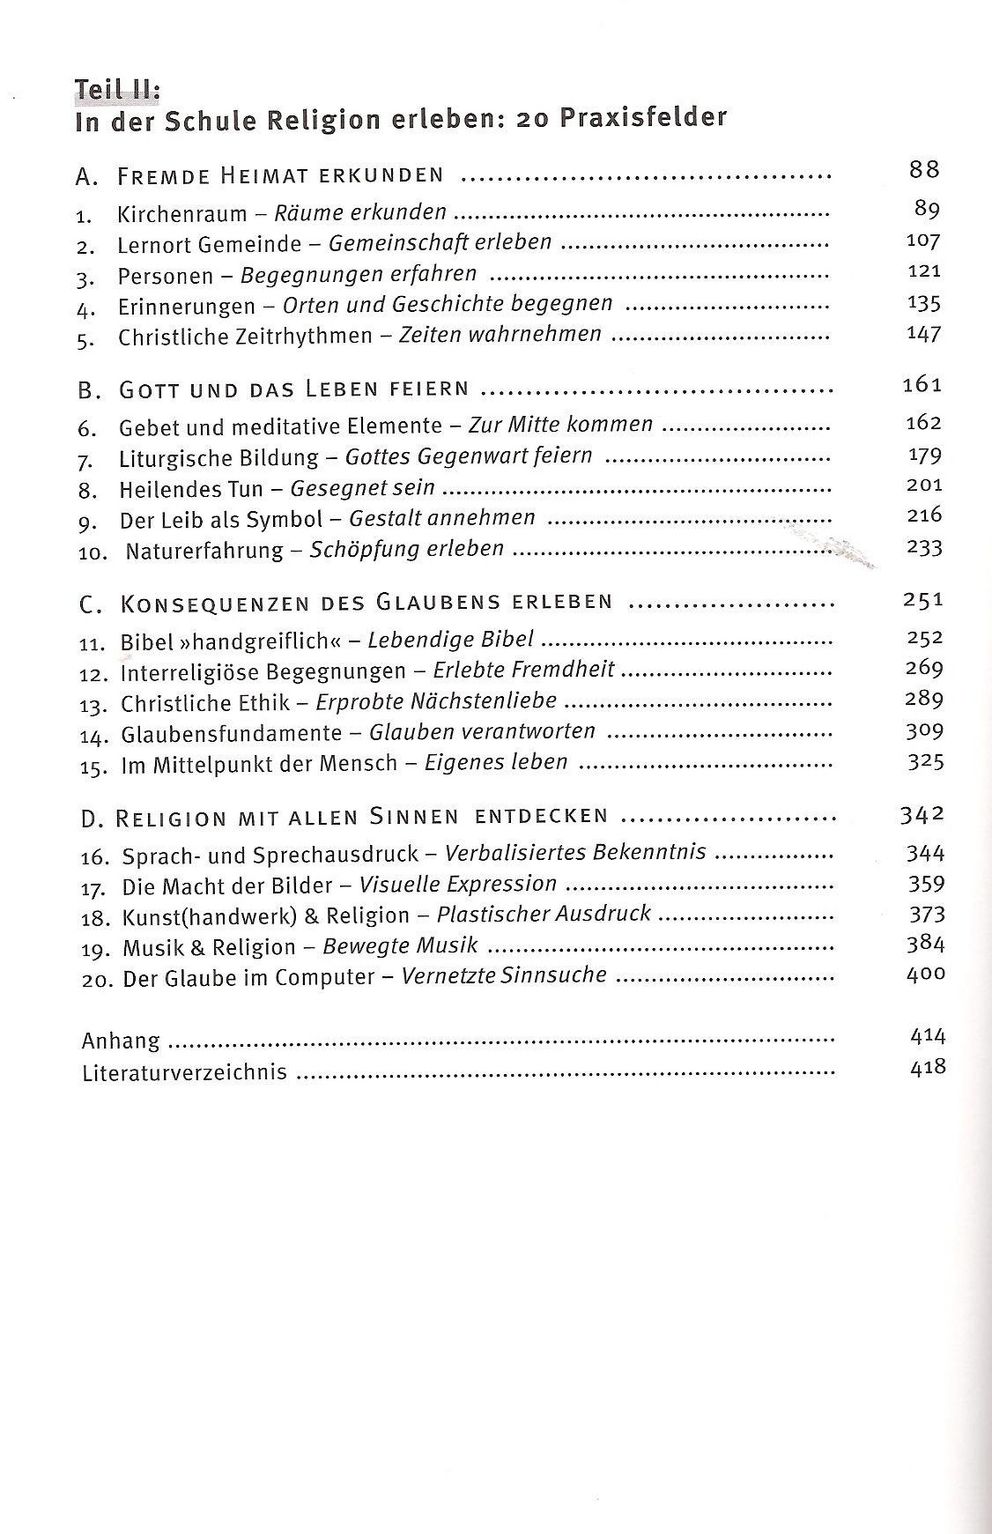 Inhaltsverzeichnis des Buchs "Religion erleben"